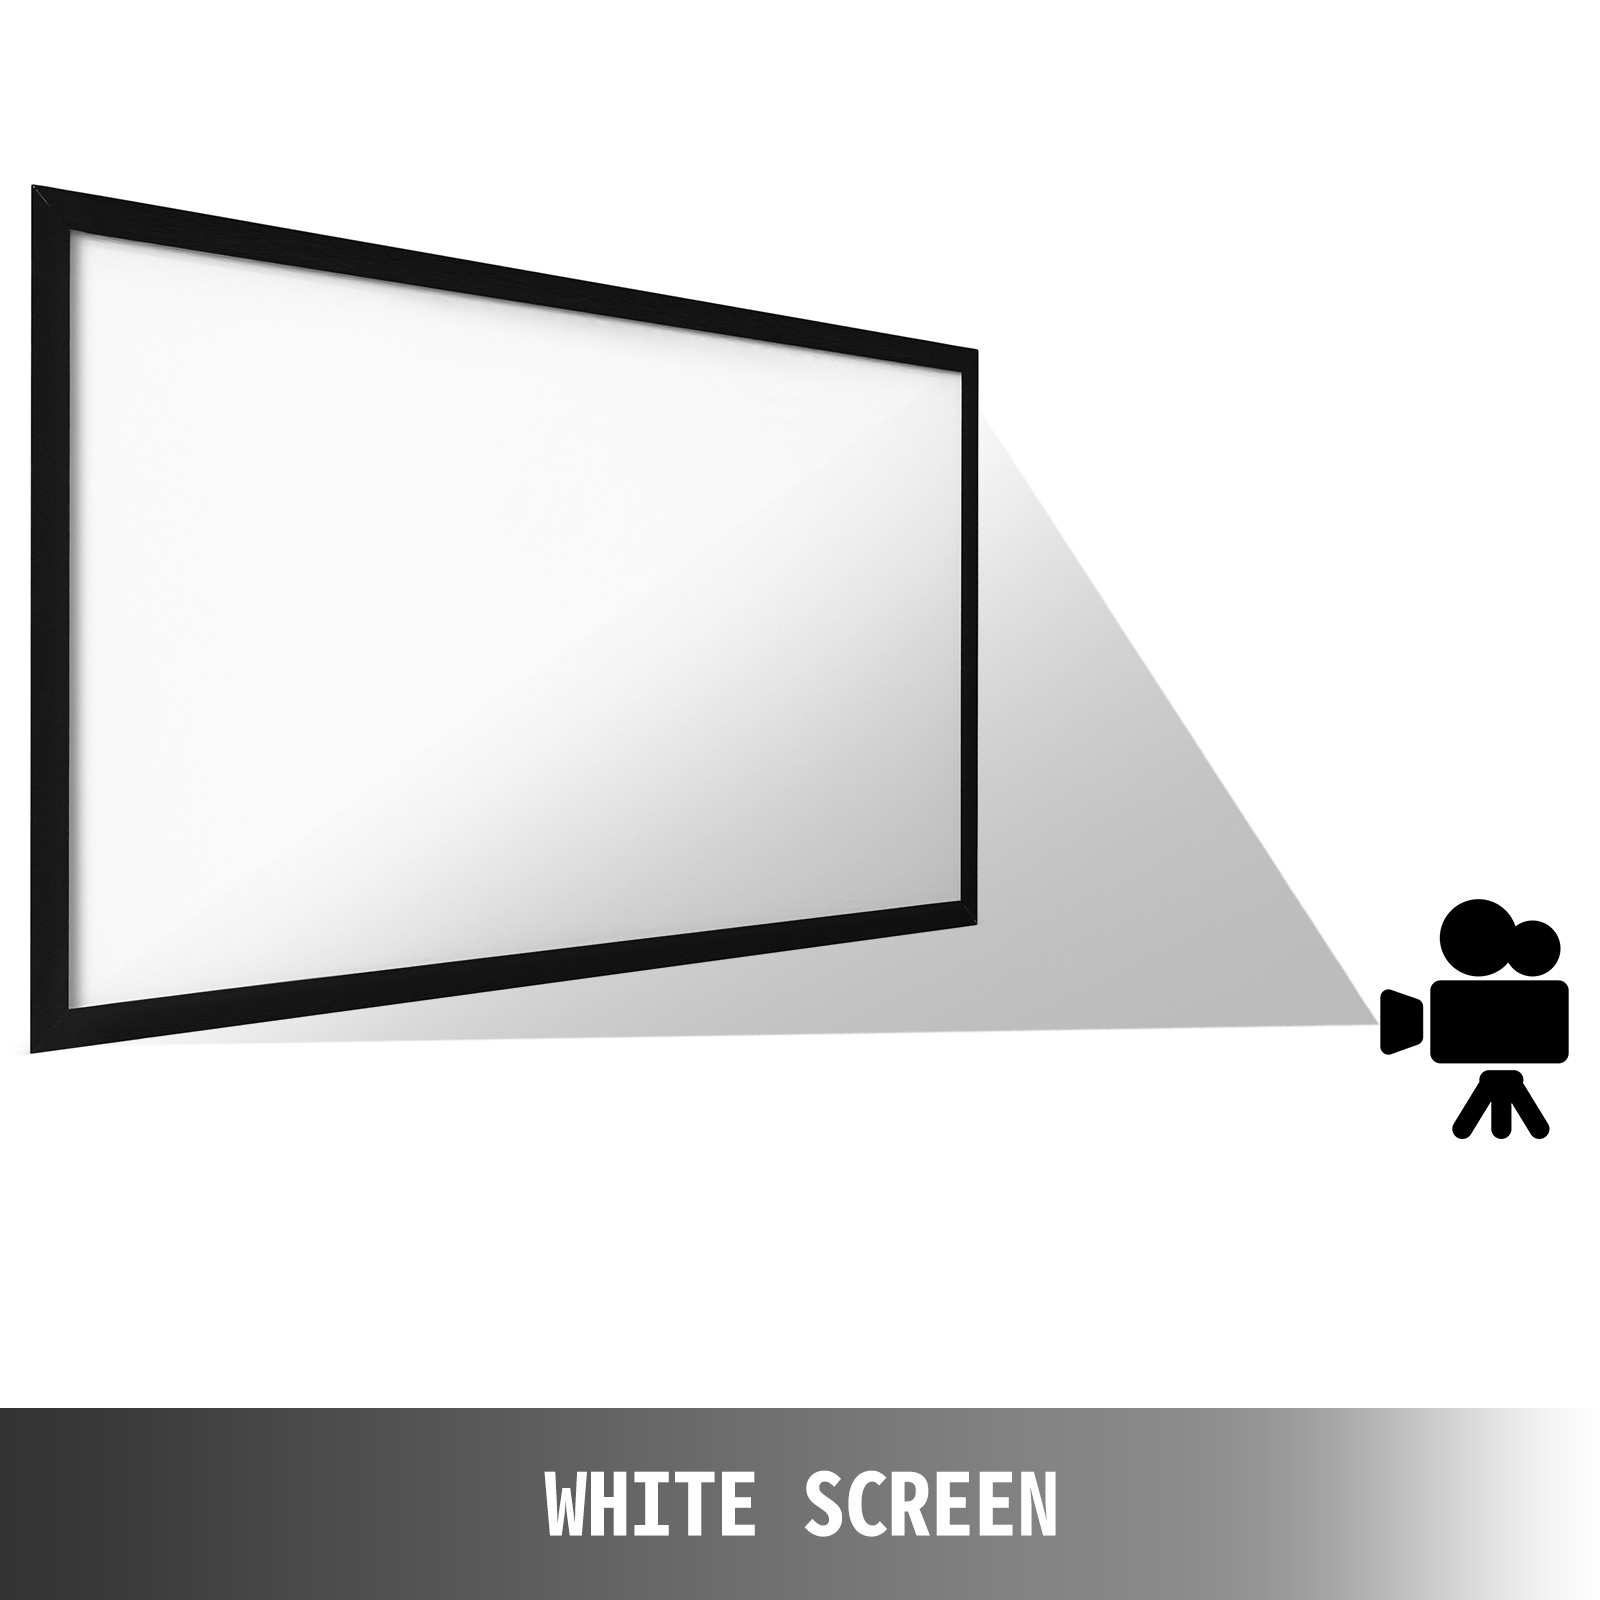 Променевий екран VEVOR 257 см х 150 см, діагональ проекційного екрану 279 см, стельове кріплення екрану з ПВХ, проекційна поверхня 15 кг з кутом огляду 160°, для заходів на відкритому повітрі